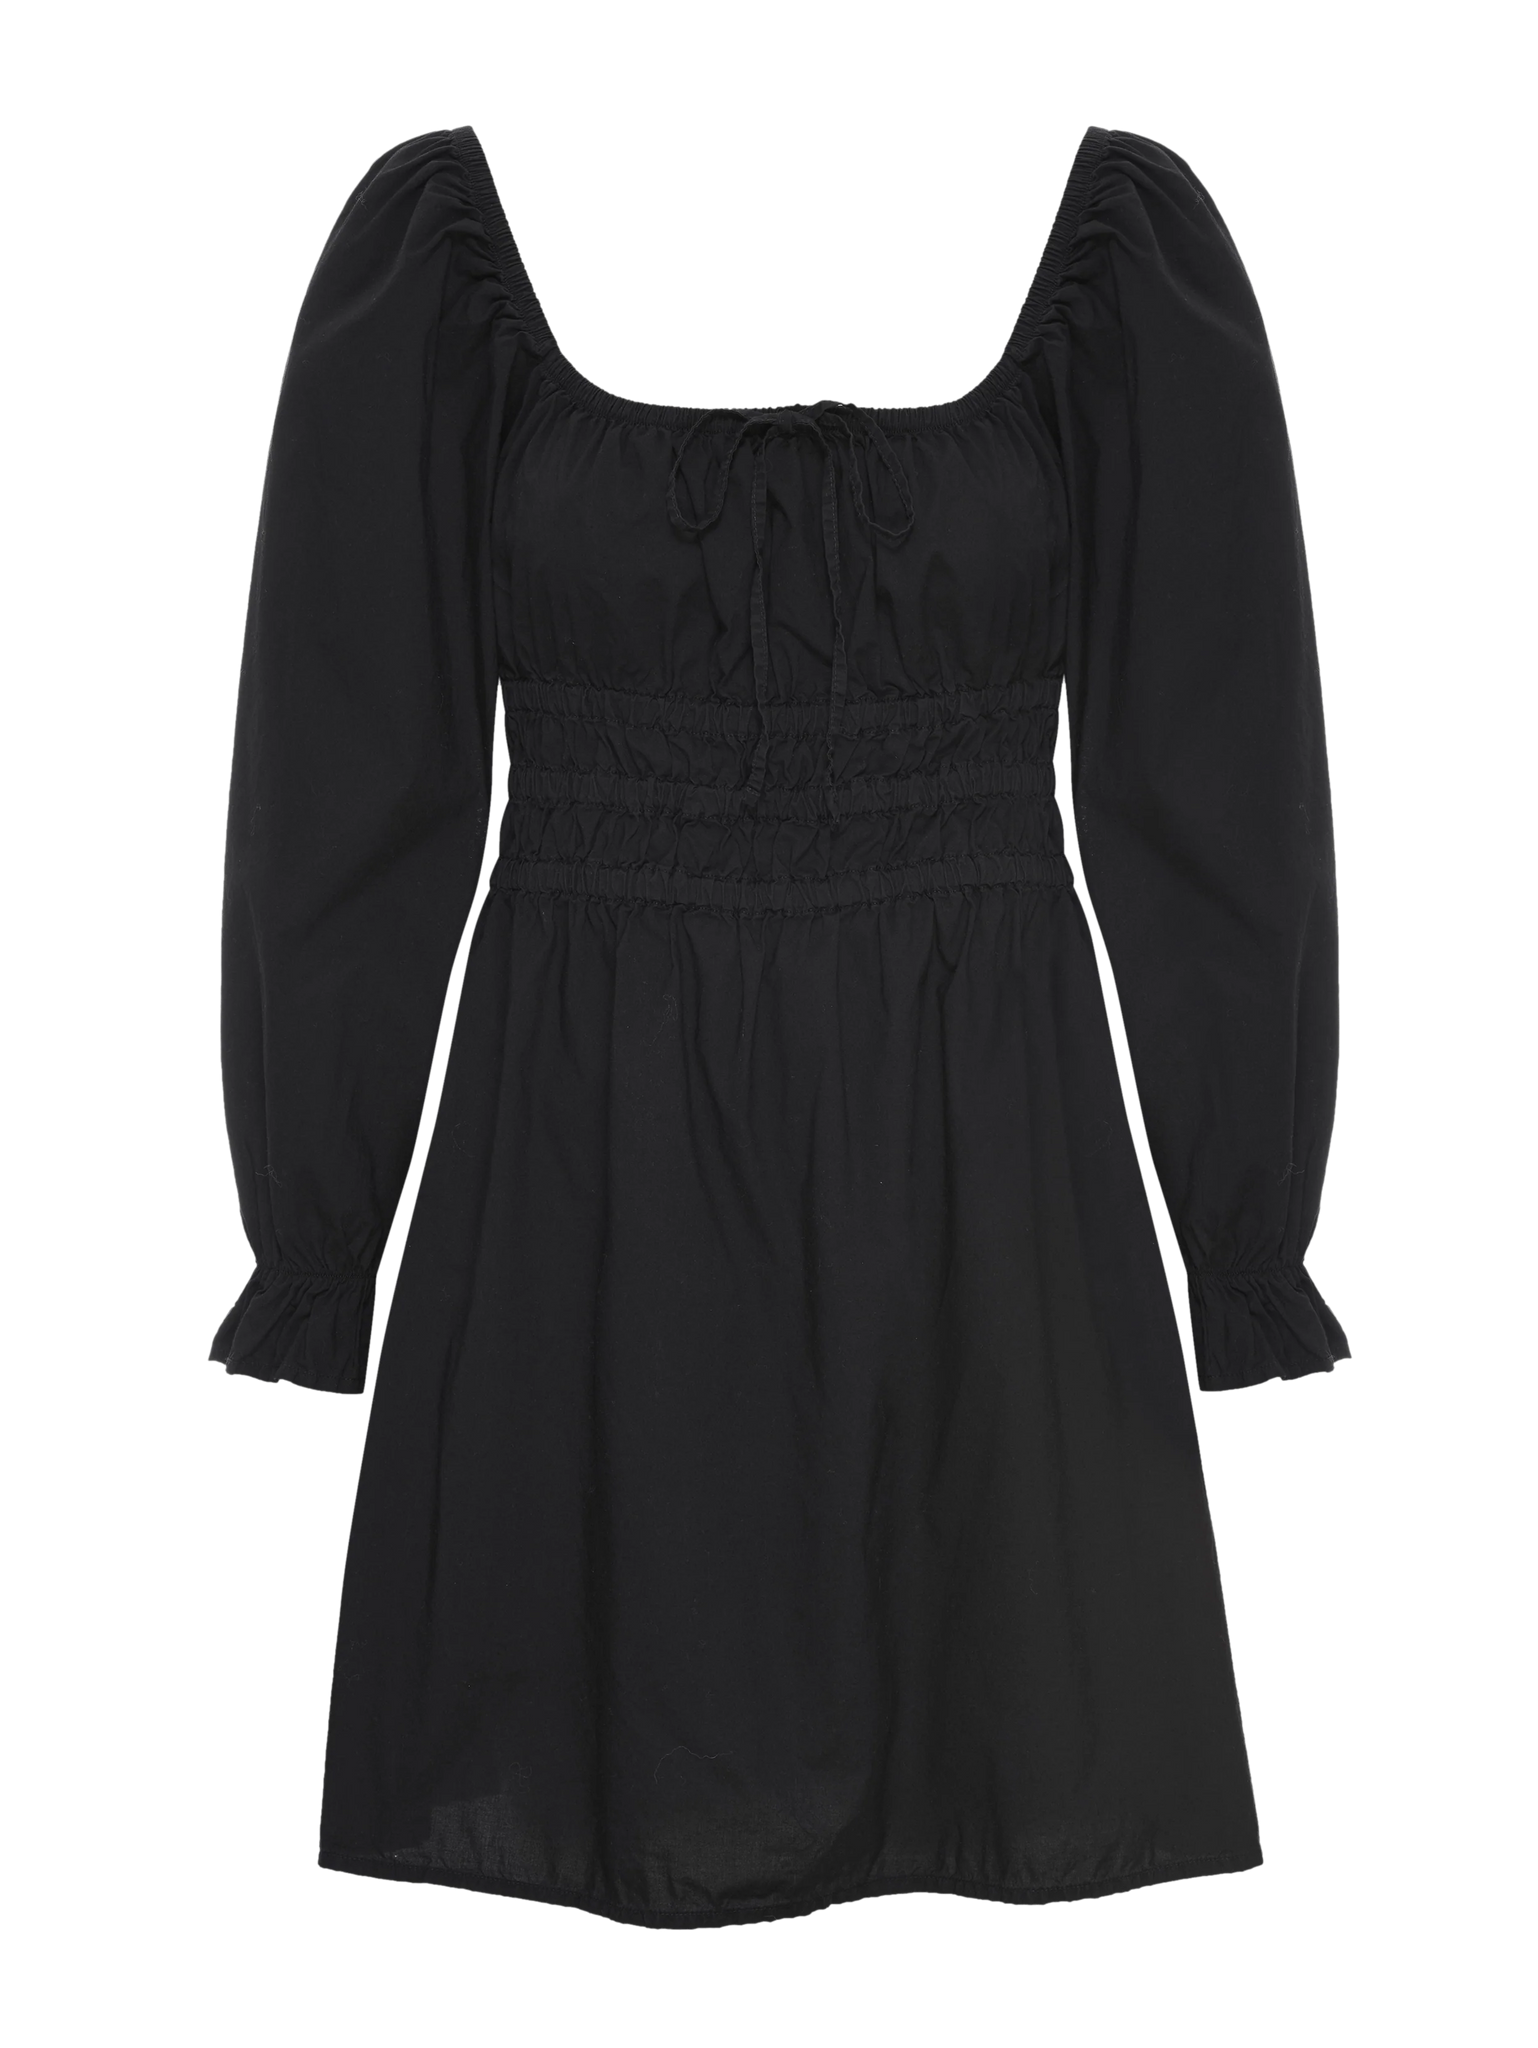 Marisol Dress in Jet Black